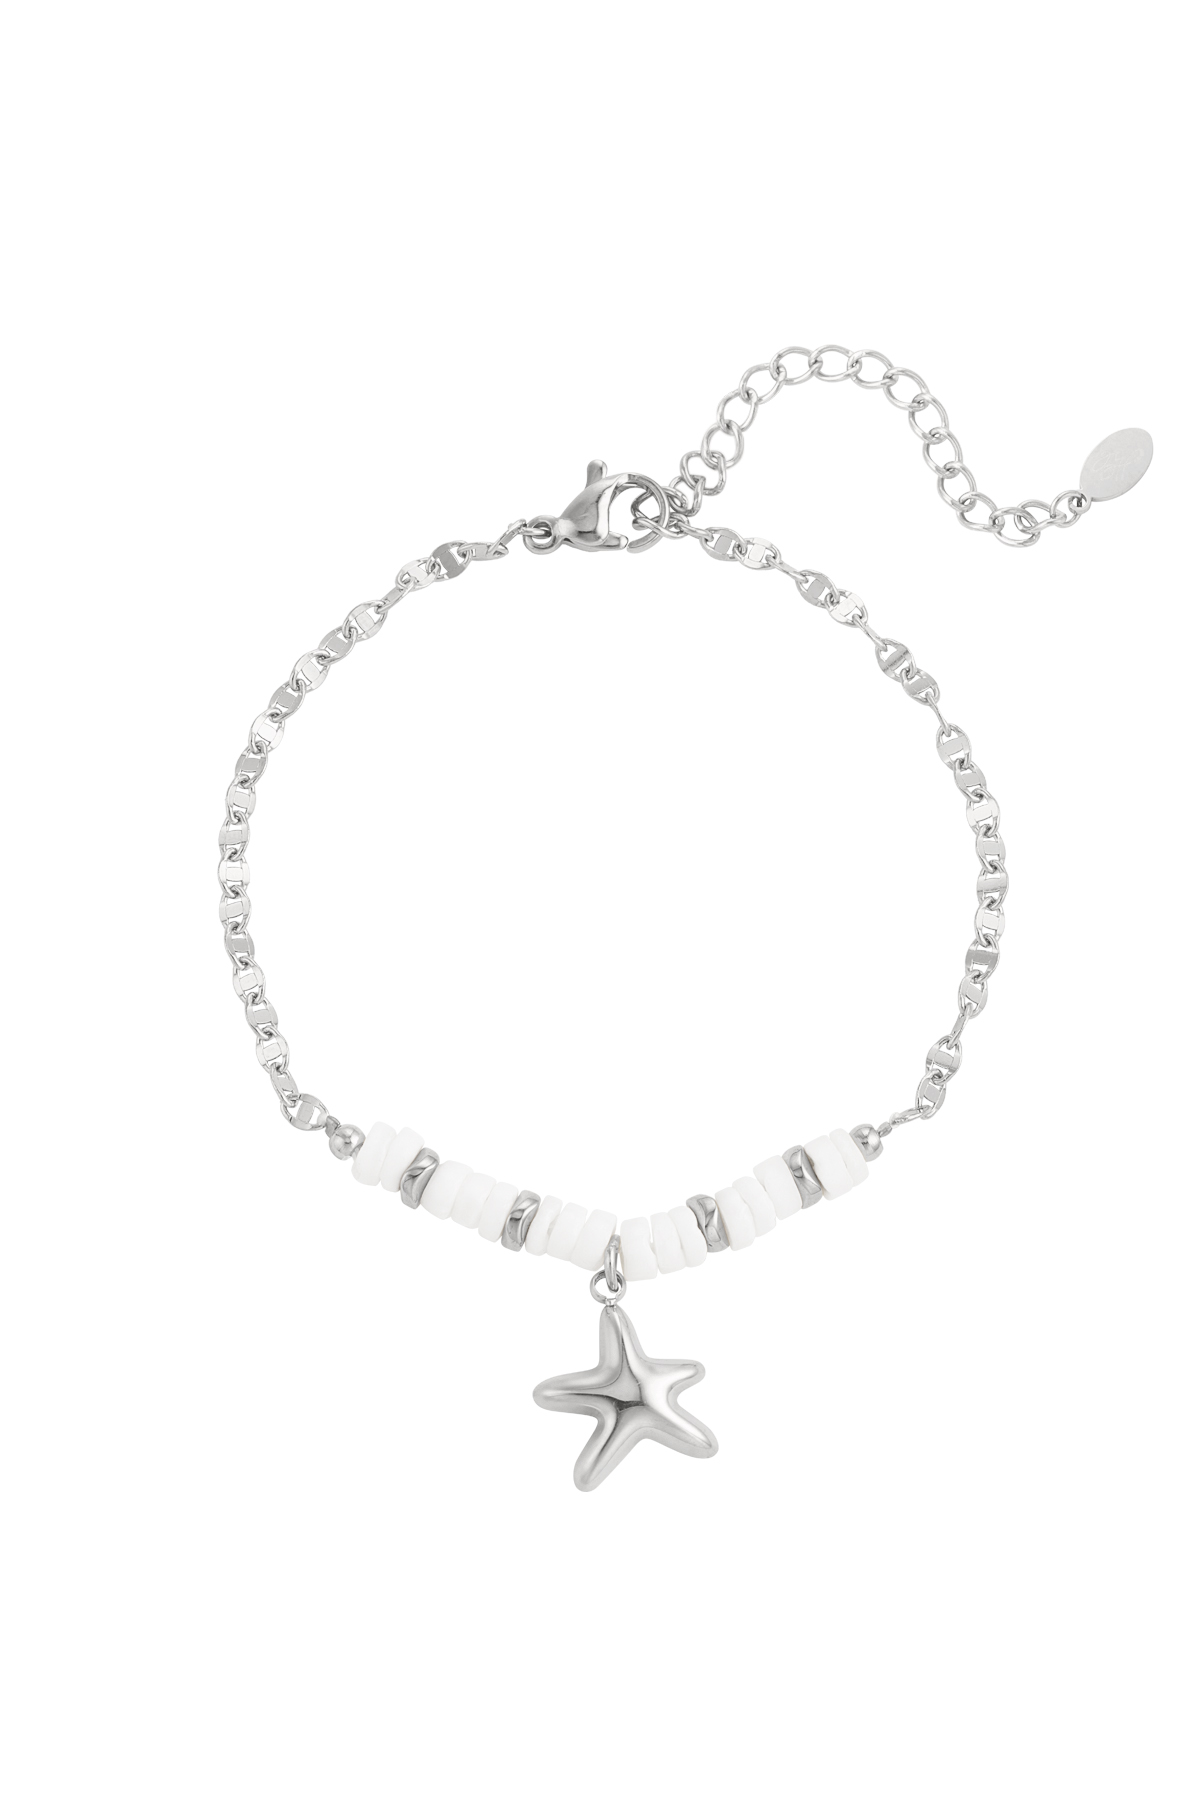 Bracciale perline e stella marina - argento h5 